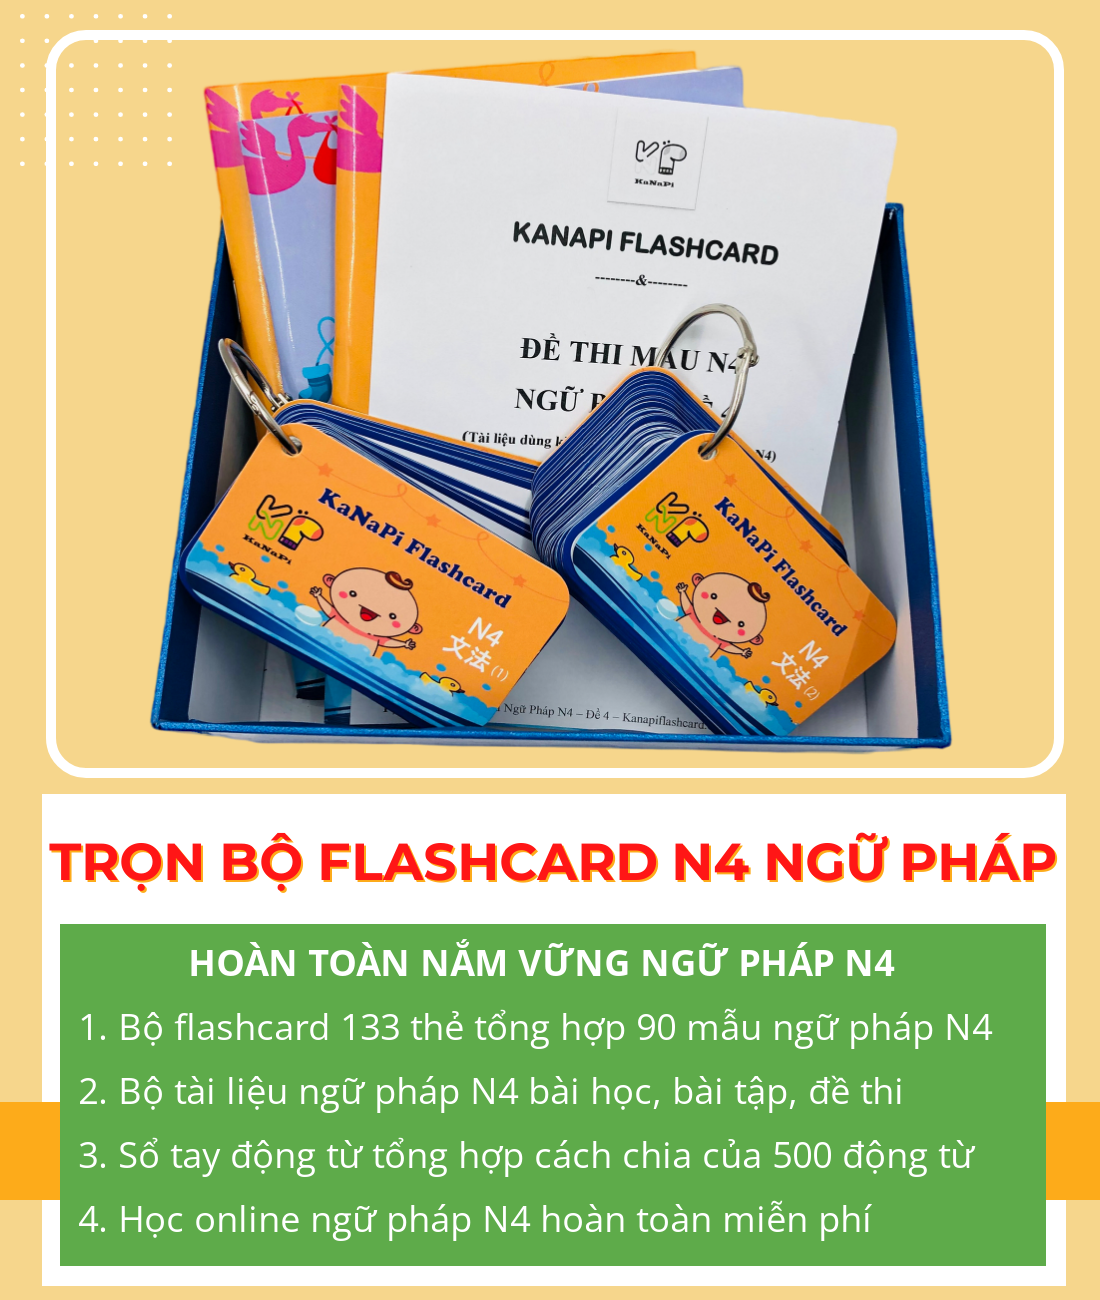 Trọn Bộ Flashcards N4 Ngữ Pháp (Thẻ flashcard + Bộ tài liệu ngữ pháp N4 + Sổ tay động từ + Học Online) – Kanapi Flashcard